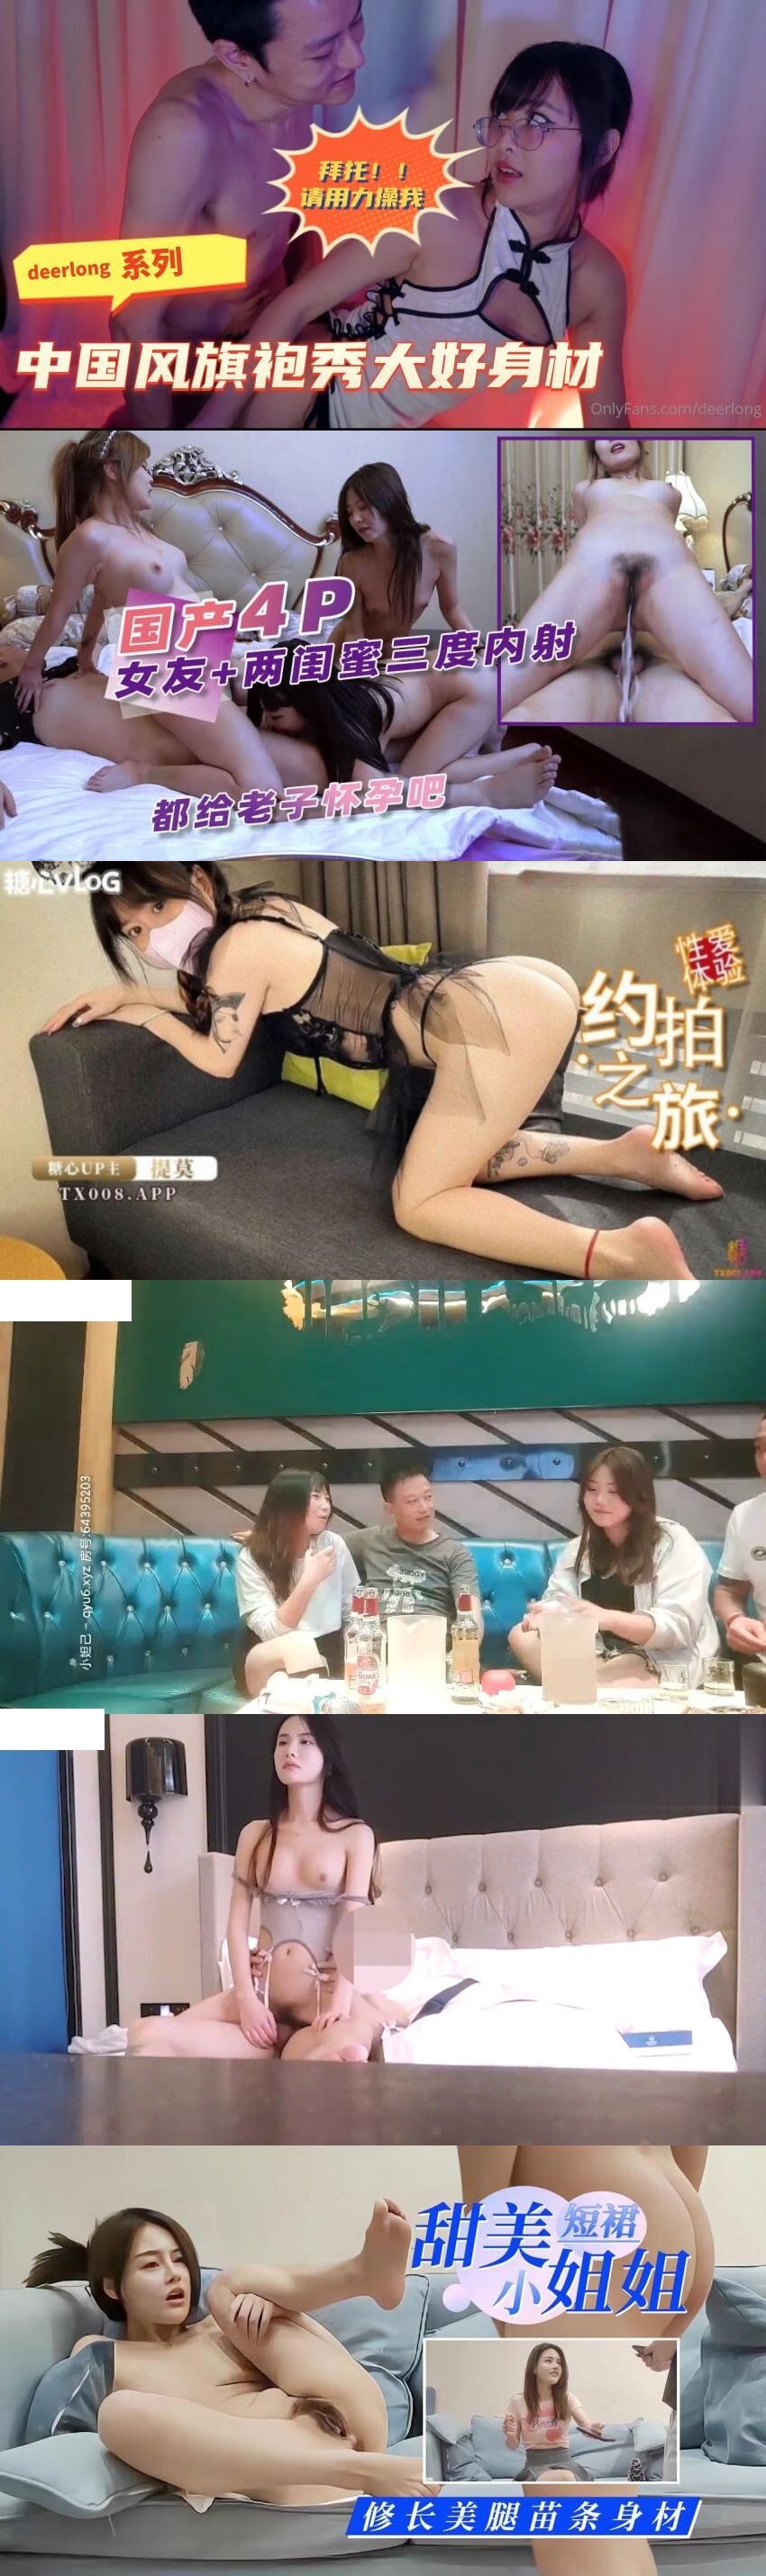 『台灣』肛門淫辱白衣NTR+和寂寞小姨的性愛切磋-林嫣